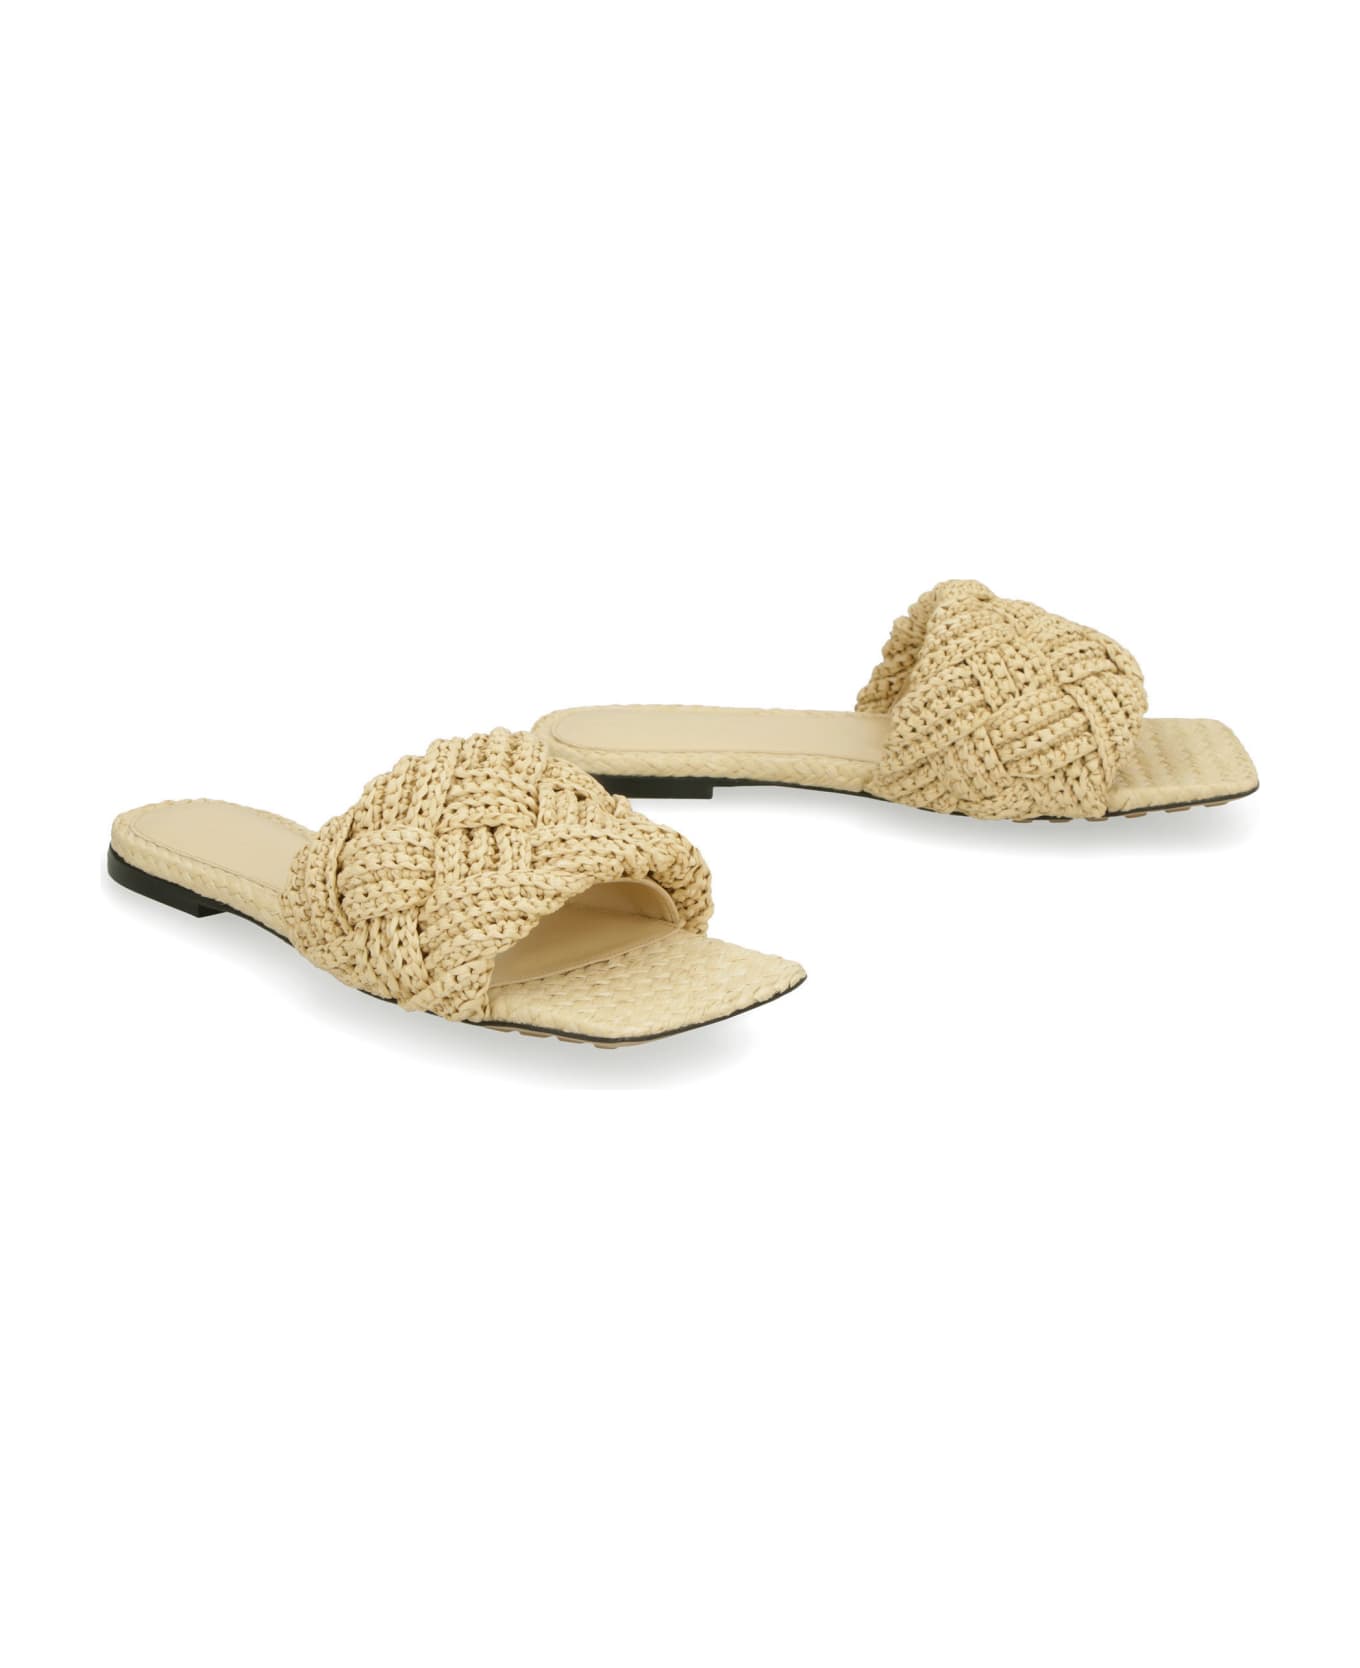 Bottega Veneta Lido Flat Sandals - Beige サンダル